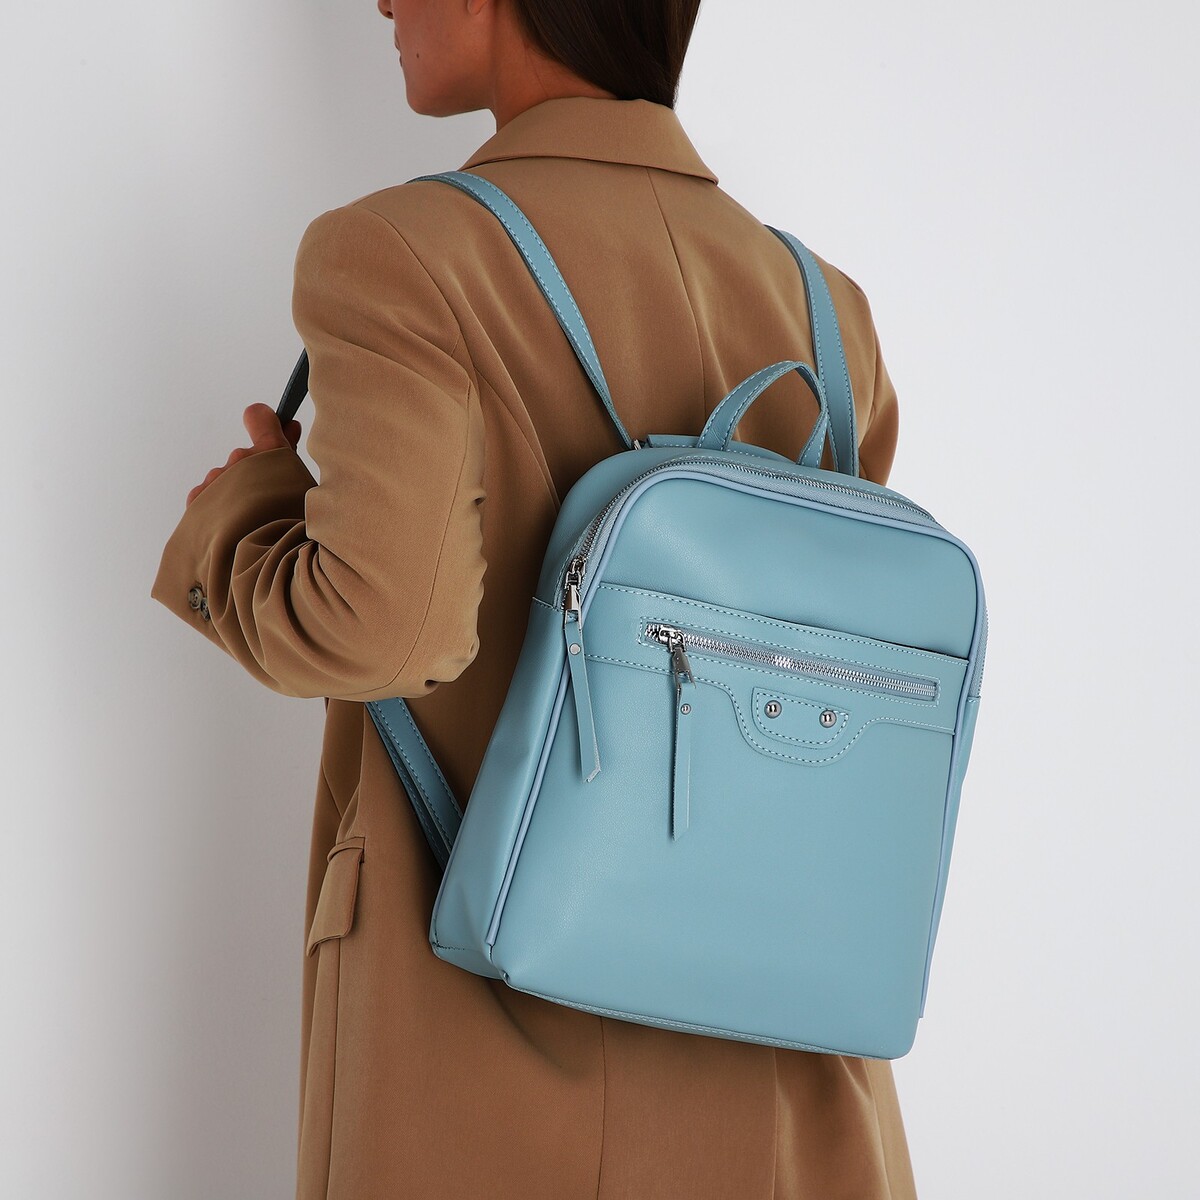 Рюкзак женский из искусственной кожи на молнии, 3 кармана, цвет голубой рюкзак женский из искусственной кожи на молнии 4 кармана сумка коричневый